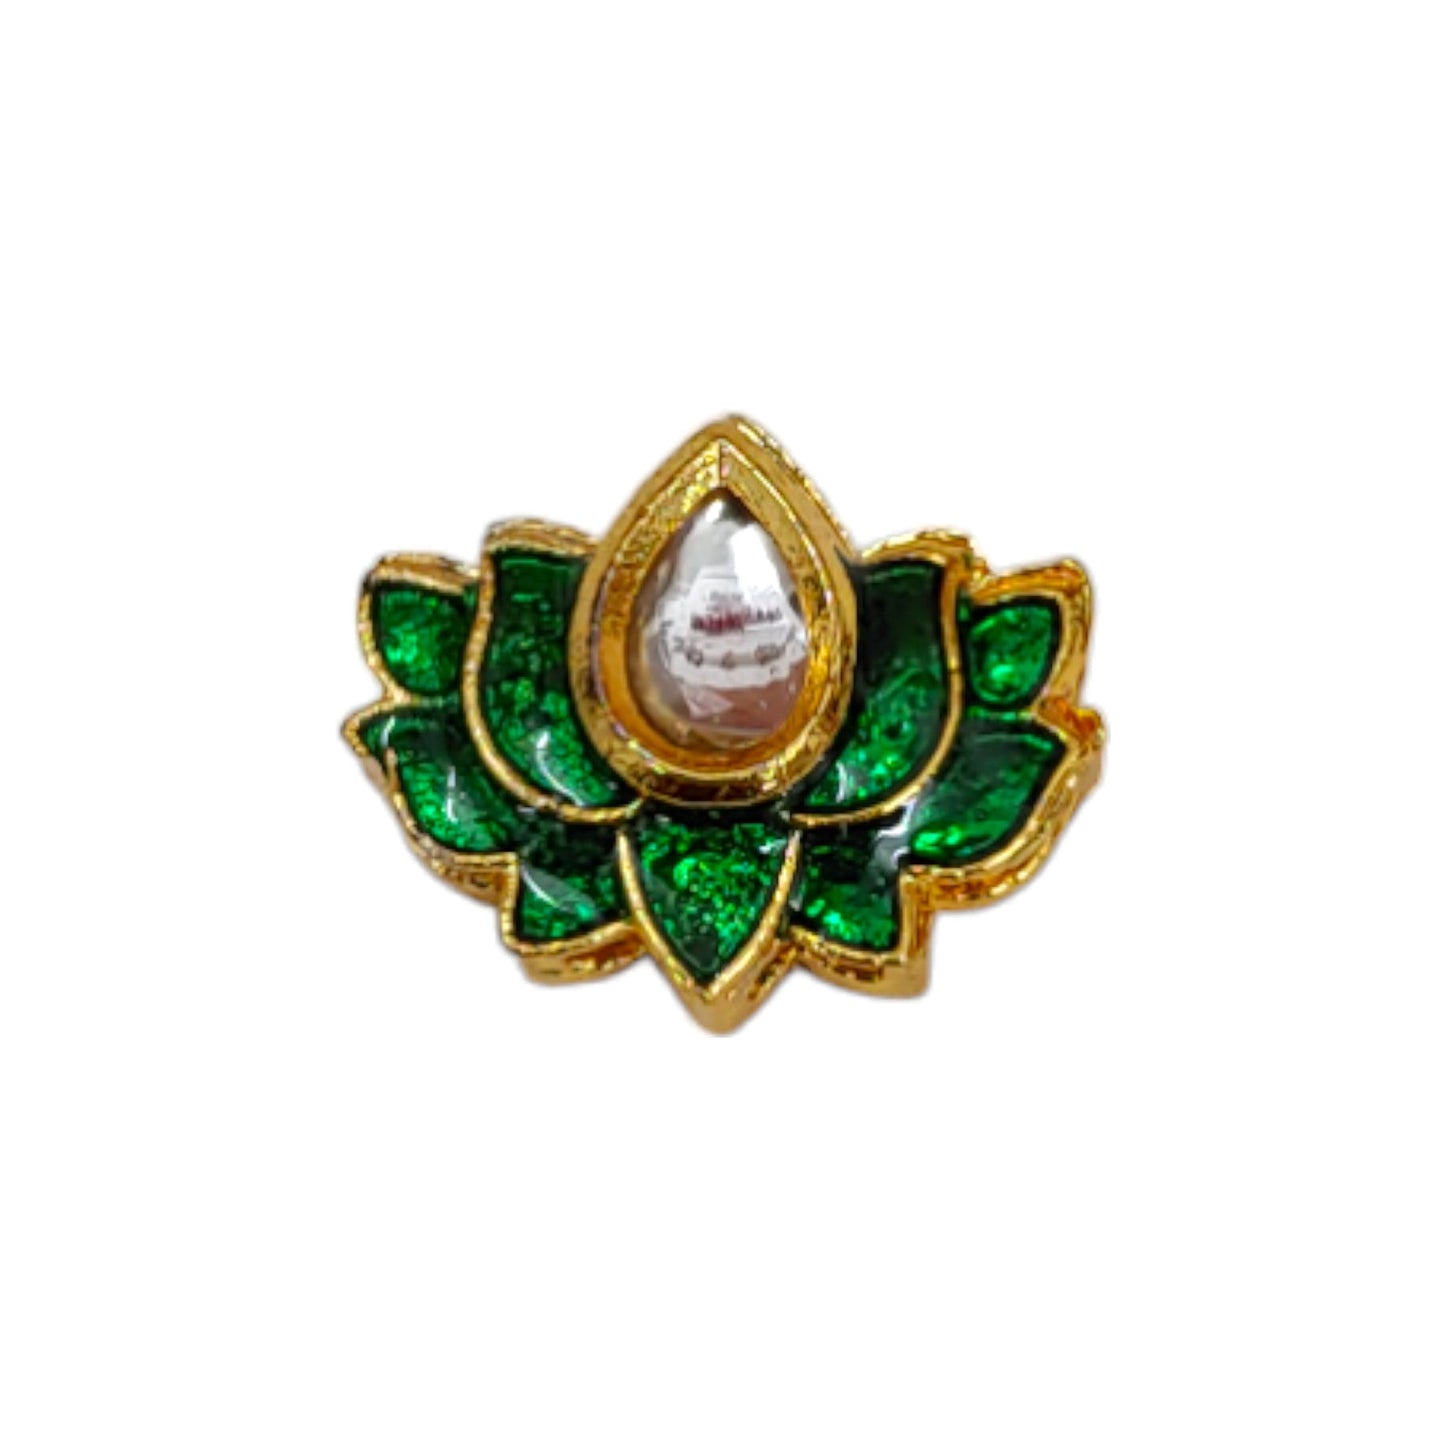 Lotus Shape Meena Metal Motif for Rakhi, Jewelry Designing, Craft or Decor - 12530 - 31